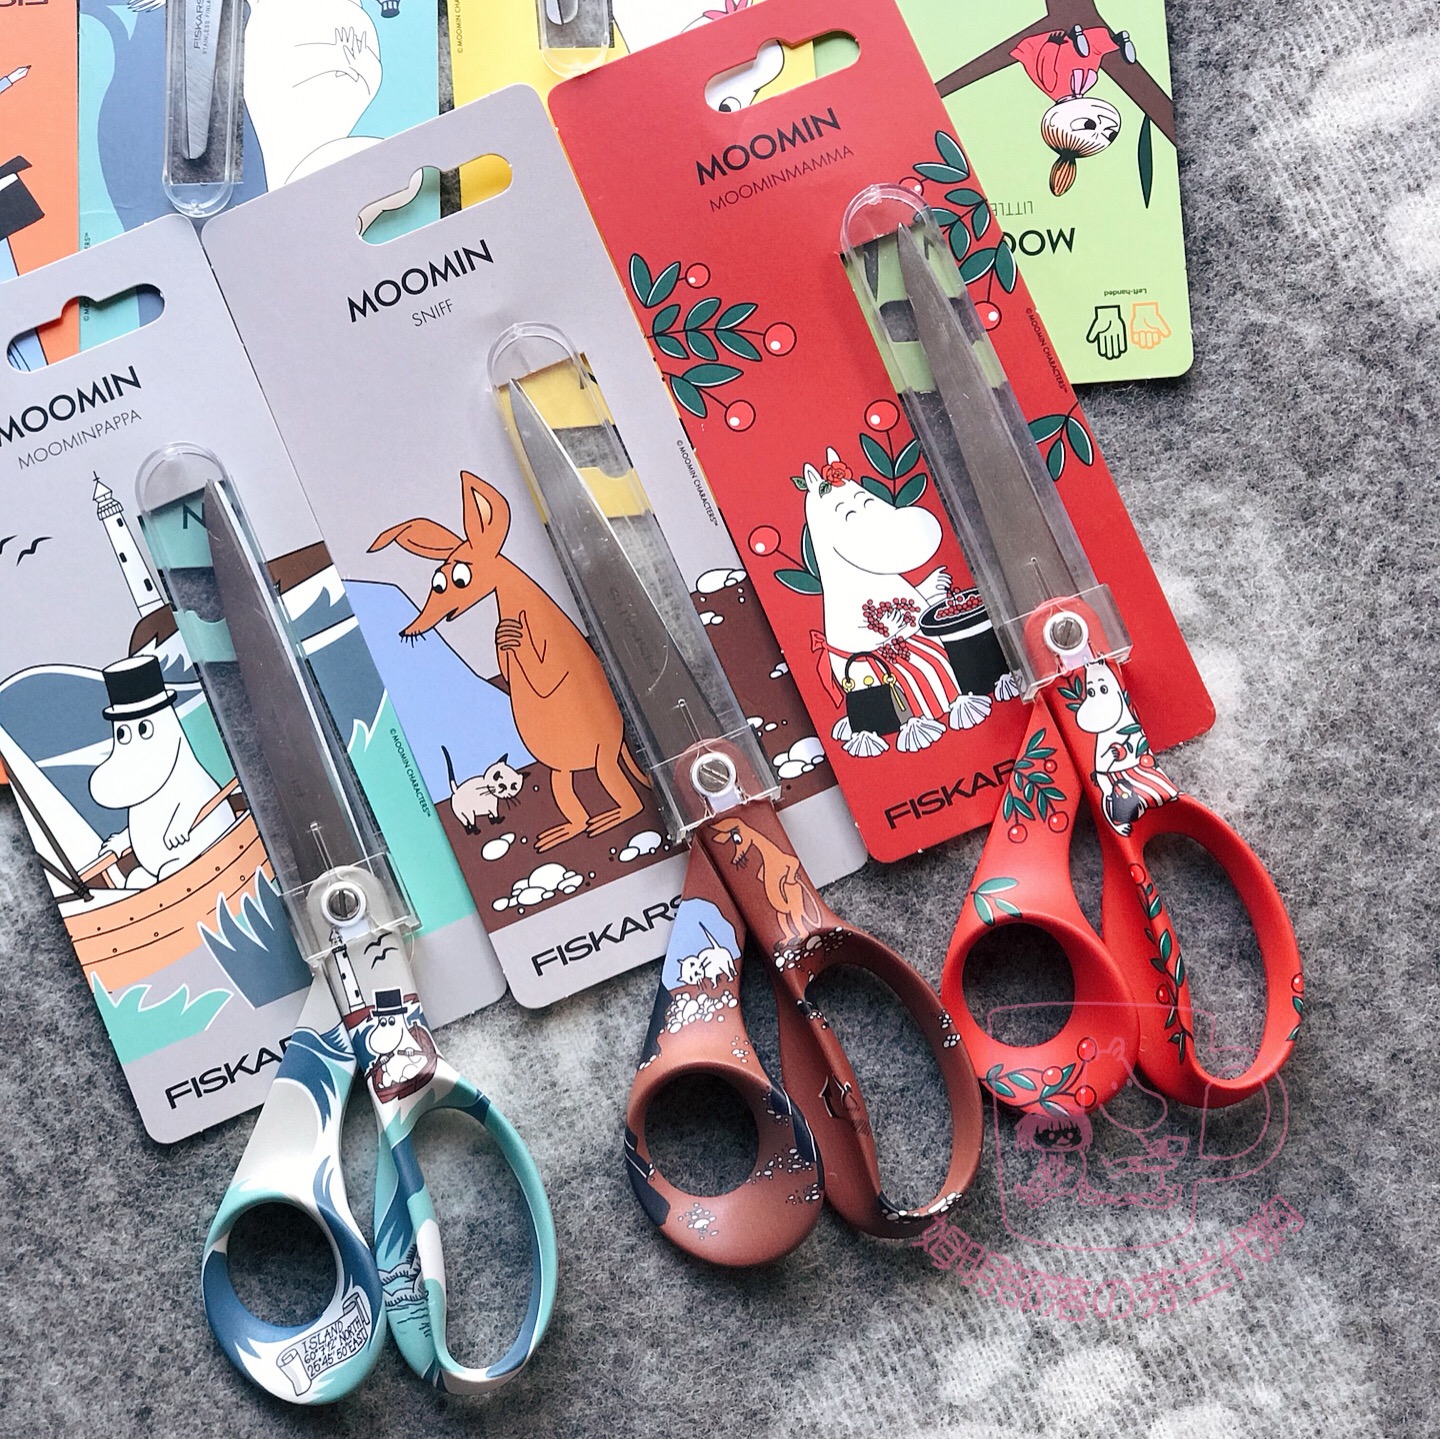 Fiskars Moomin Kids Scissors Left-Handed Little My 13 cm